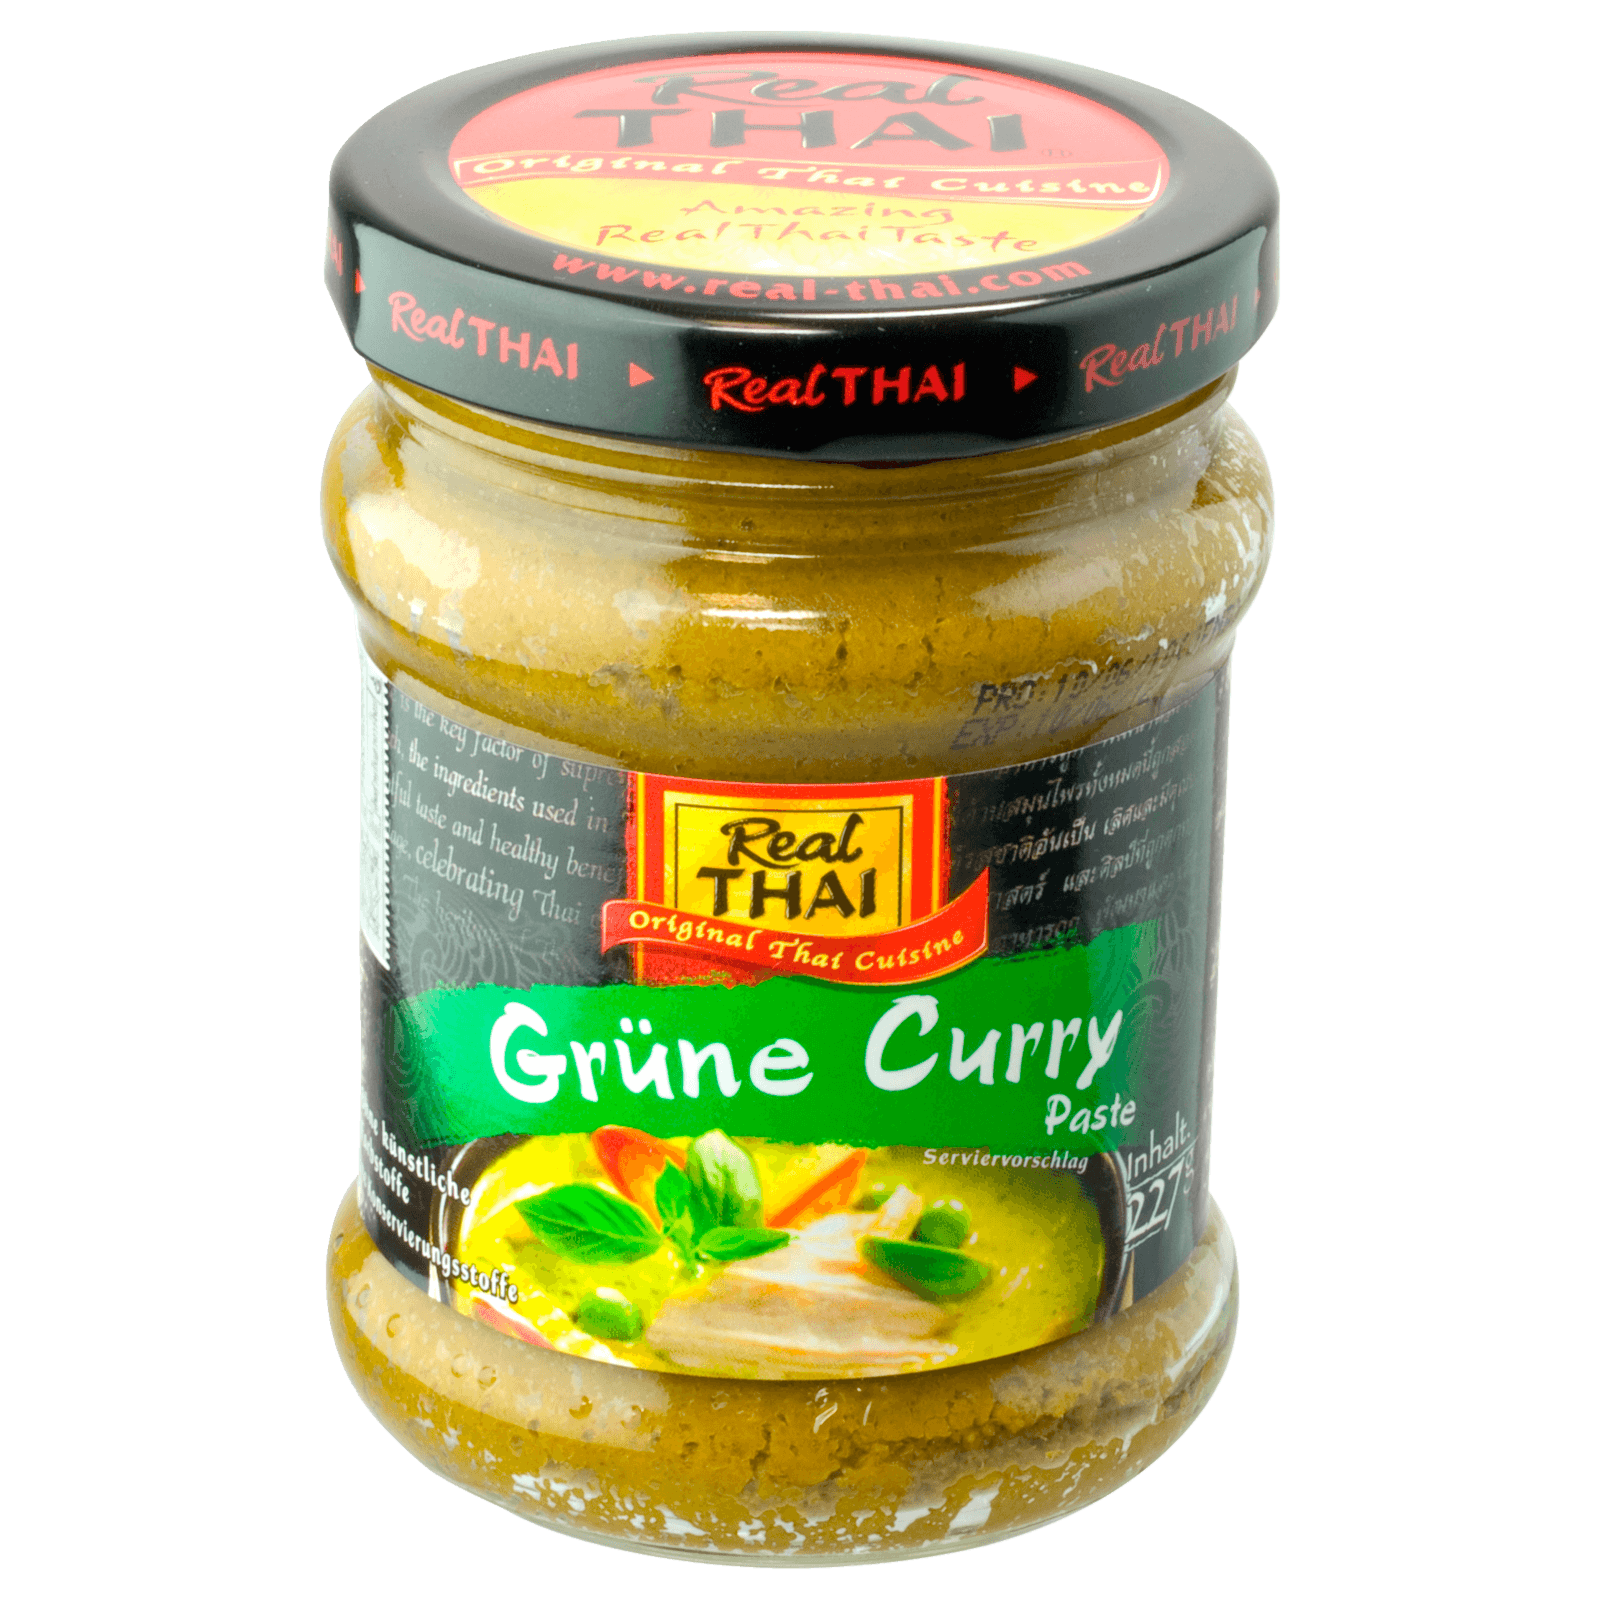 Real Thai Grüne Curry-Paste 227g bei REWE online bestellen!